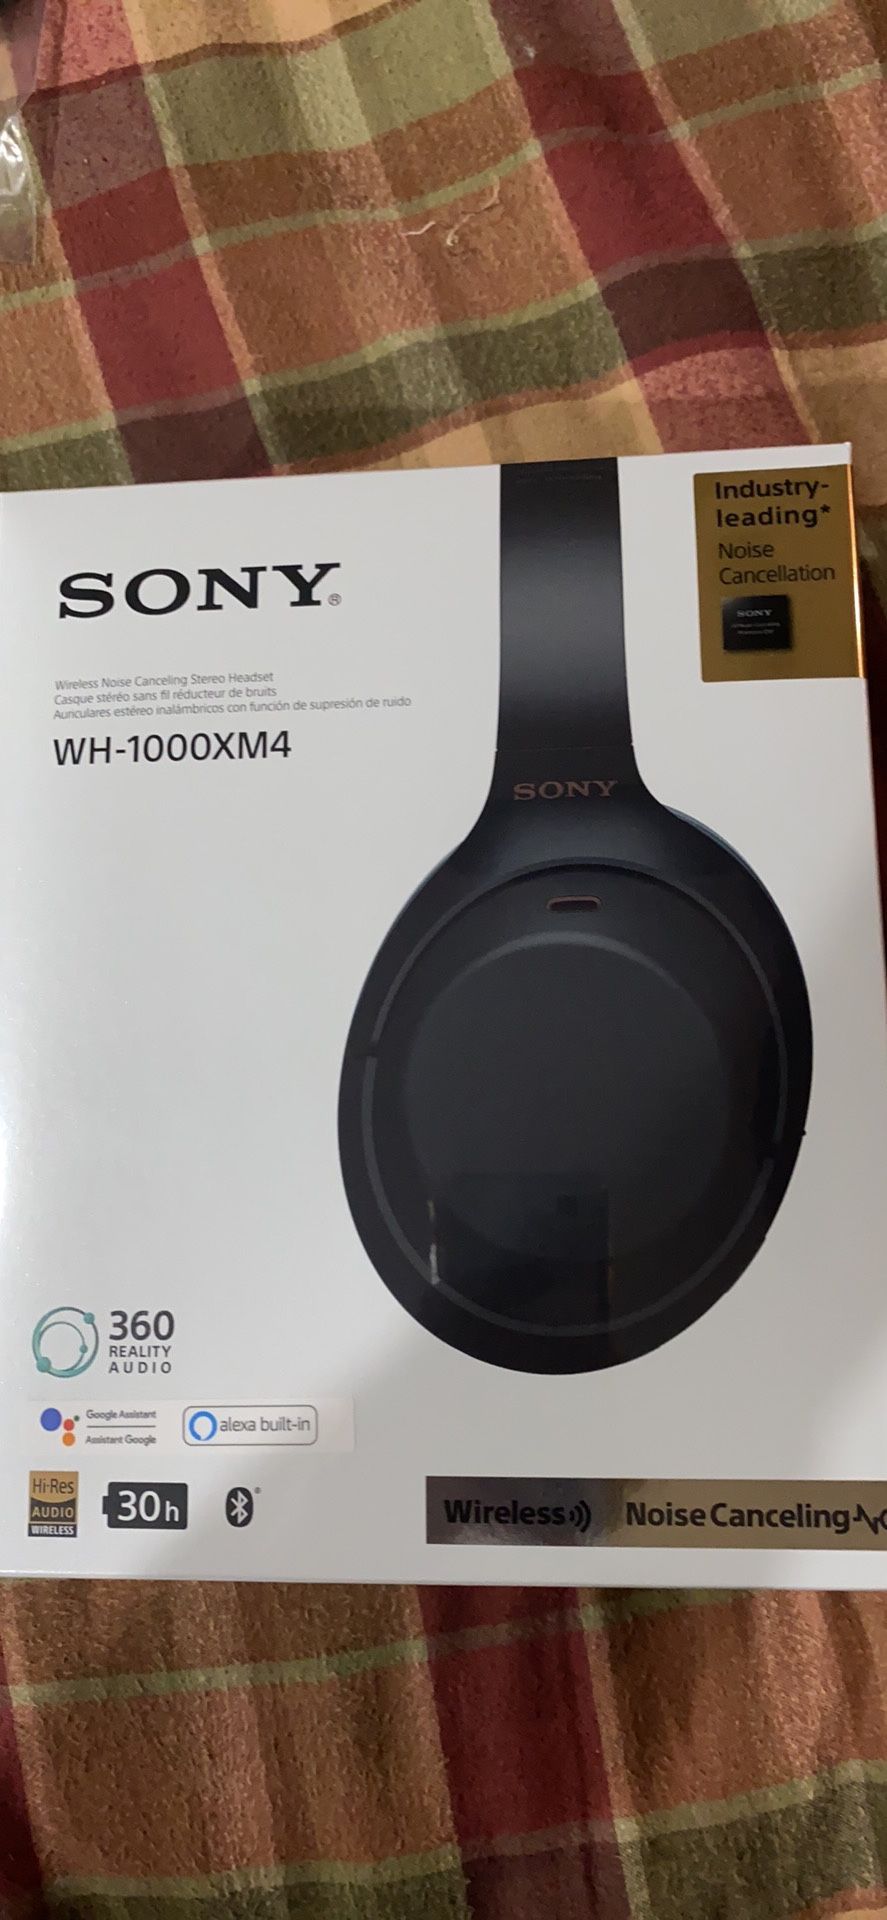 Sony XM4 (WH-1000XM4) headphones